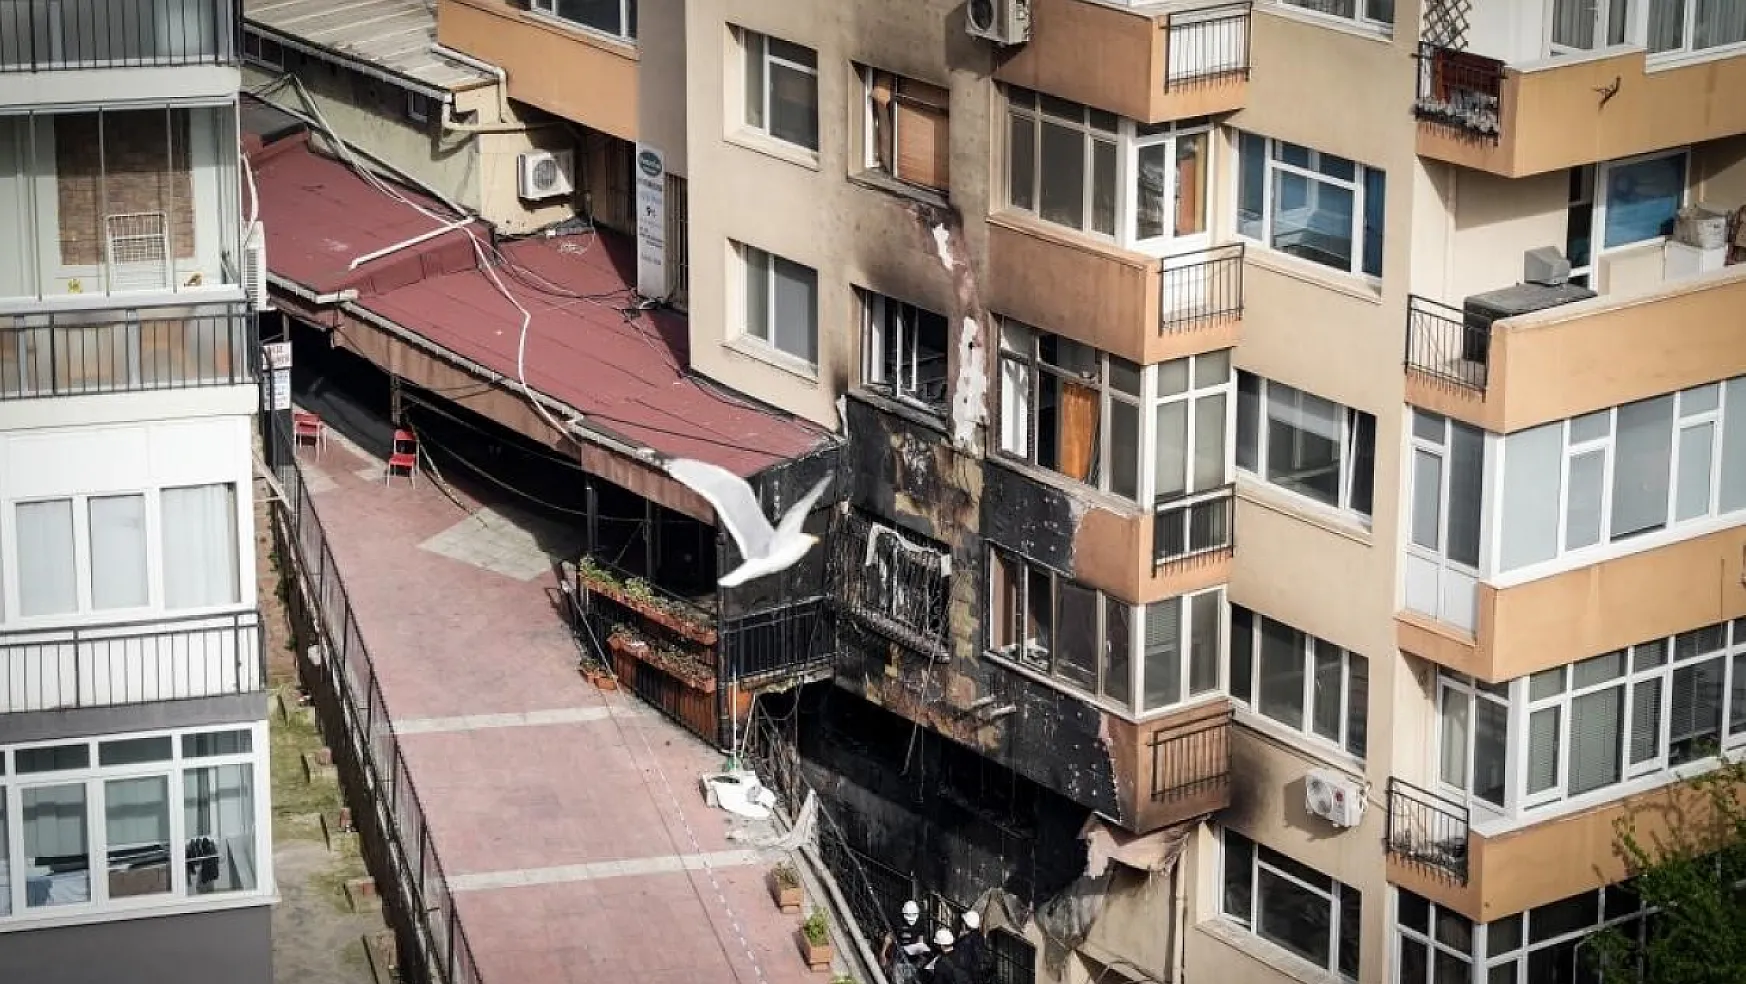 Beşiktaş'ta 29 kişinin öldüğü yangına ilişkin itfaiye raporu çıktı